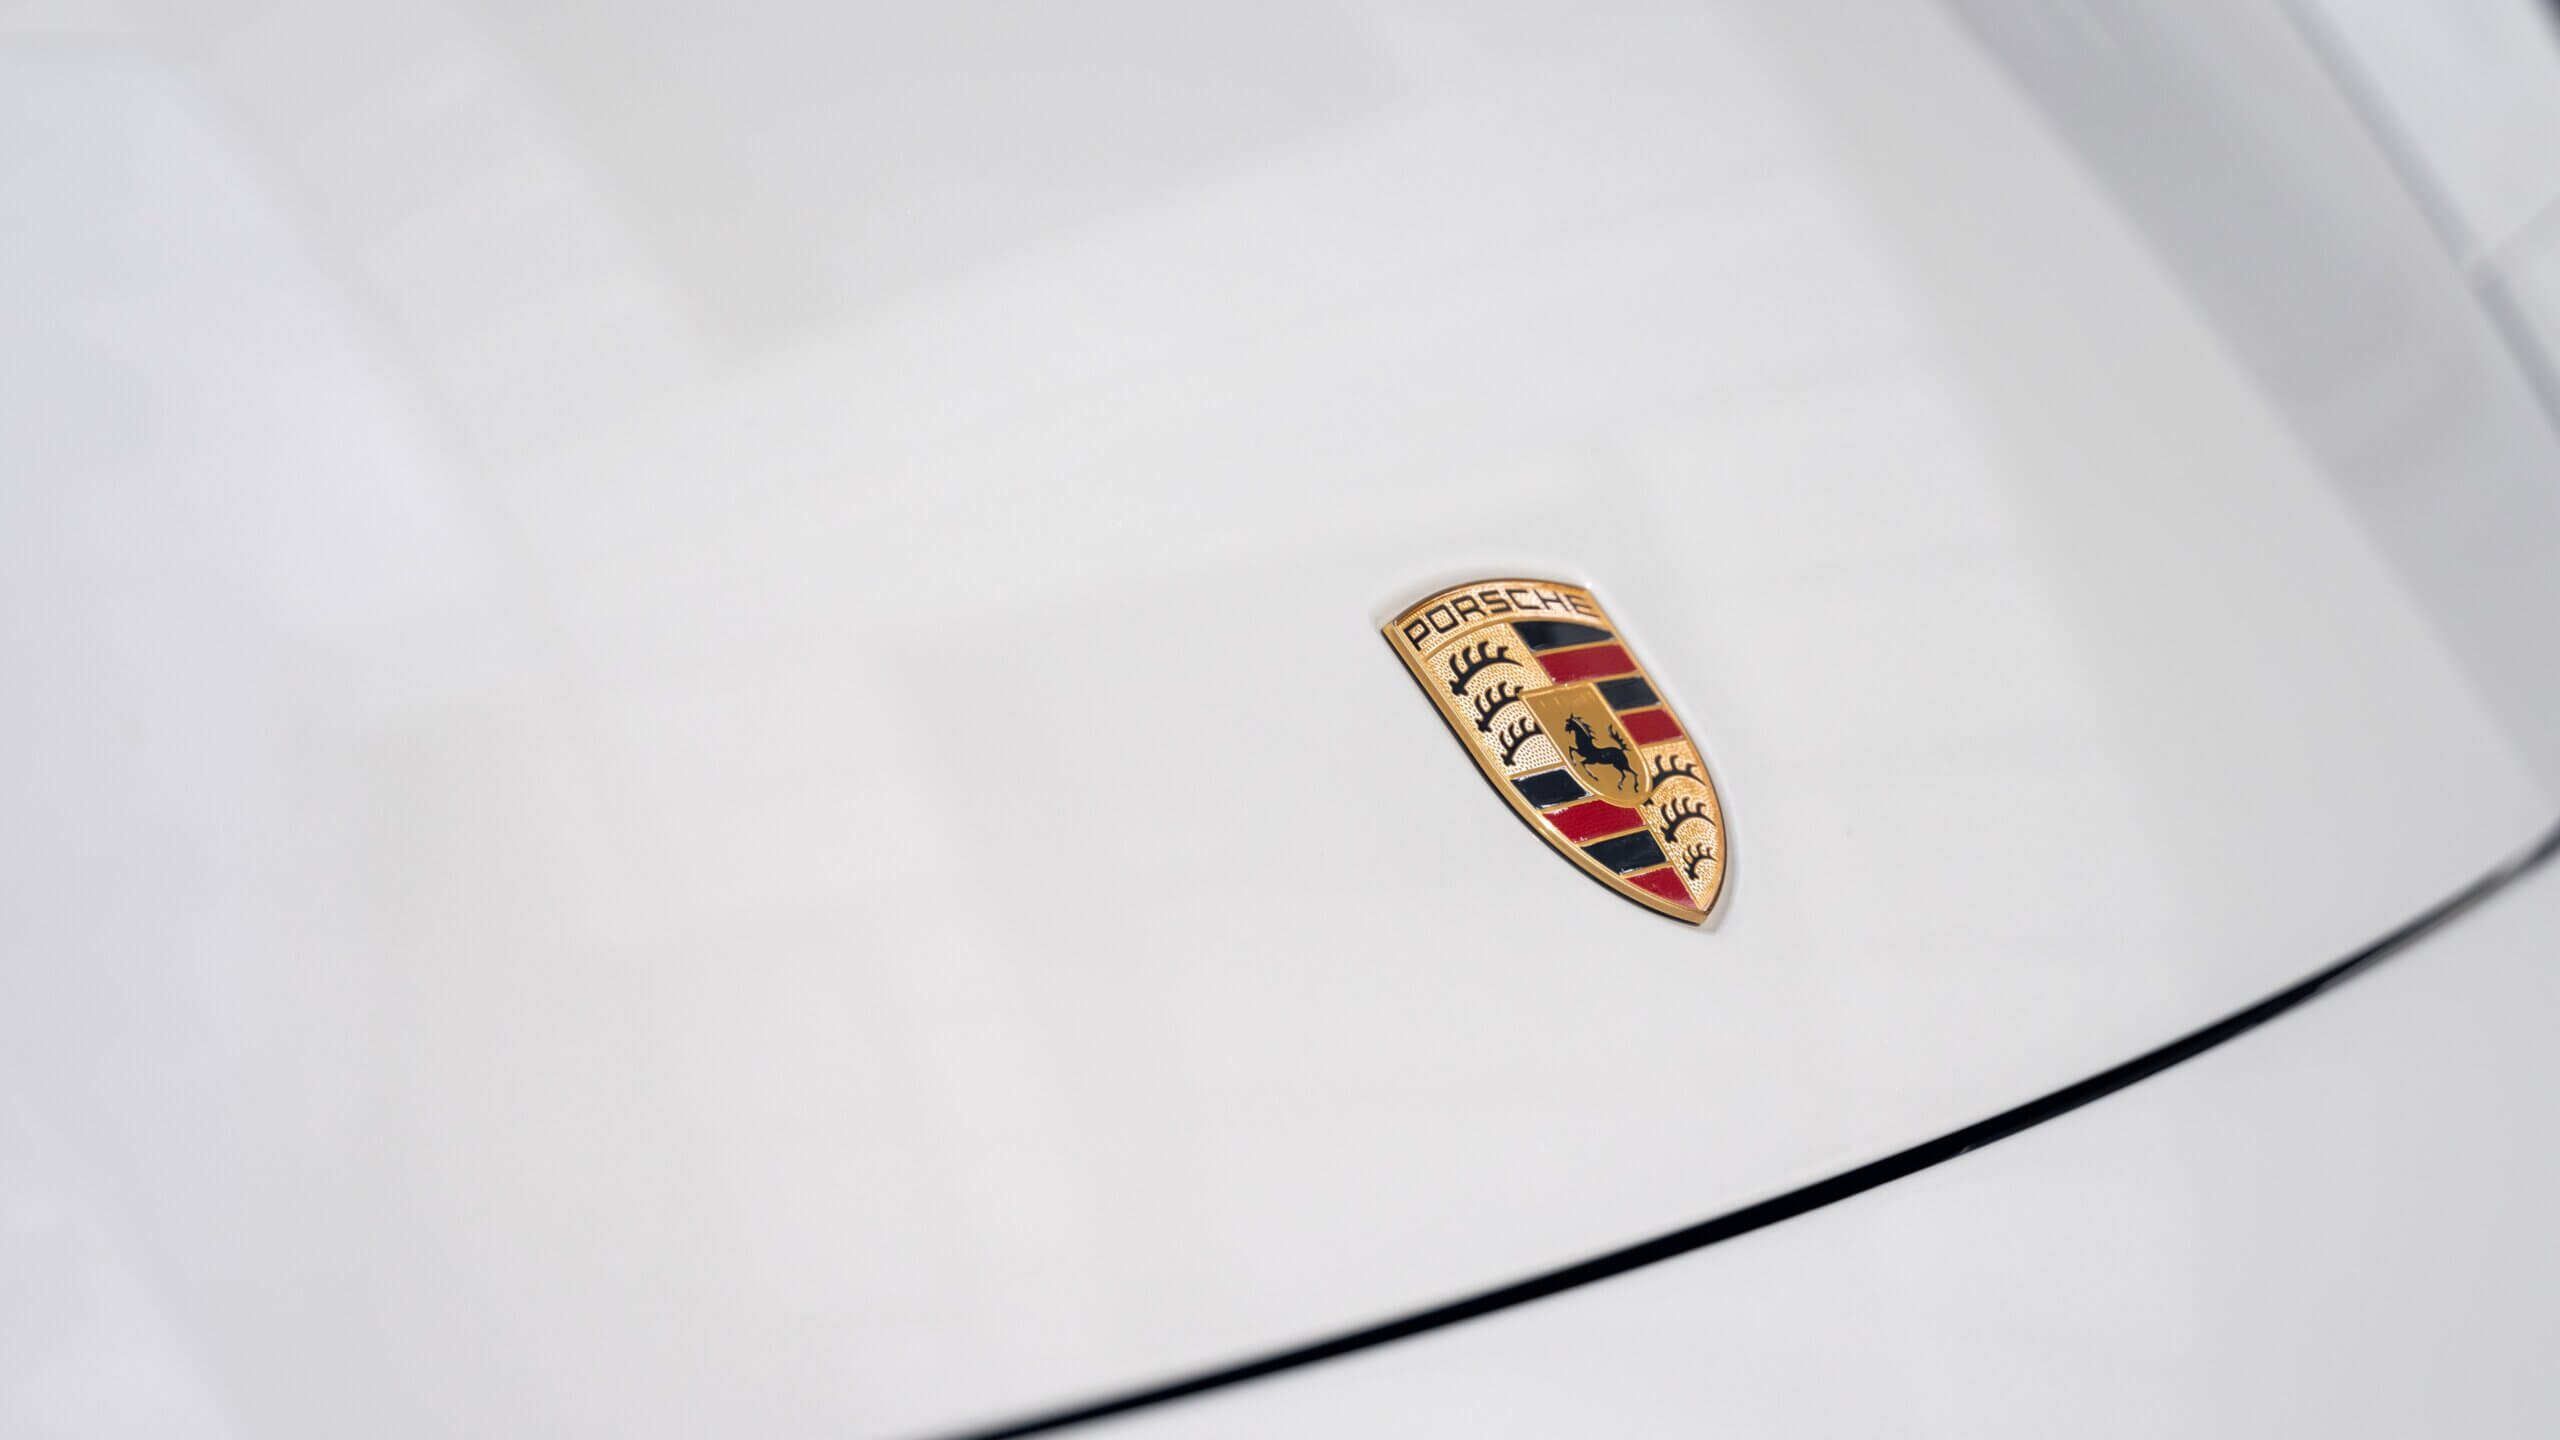 Professionele Porsche bedrijfswagens van premium kwaliteit voor zakelijke mobiliteit in omgeving Roosendaal